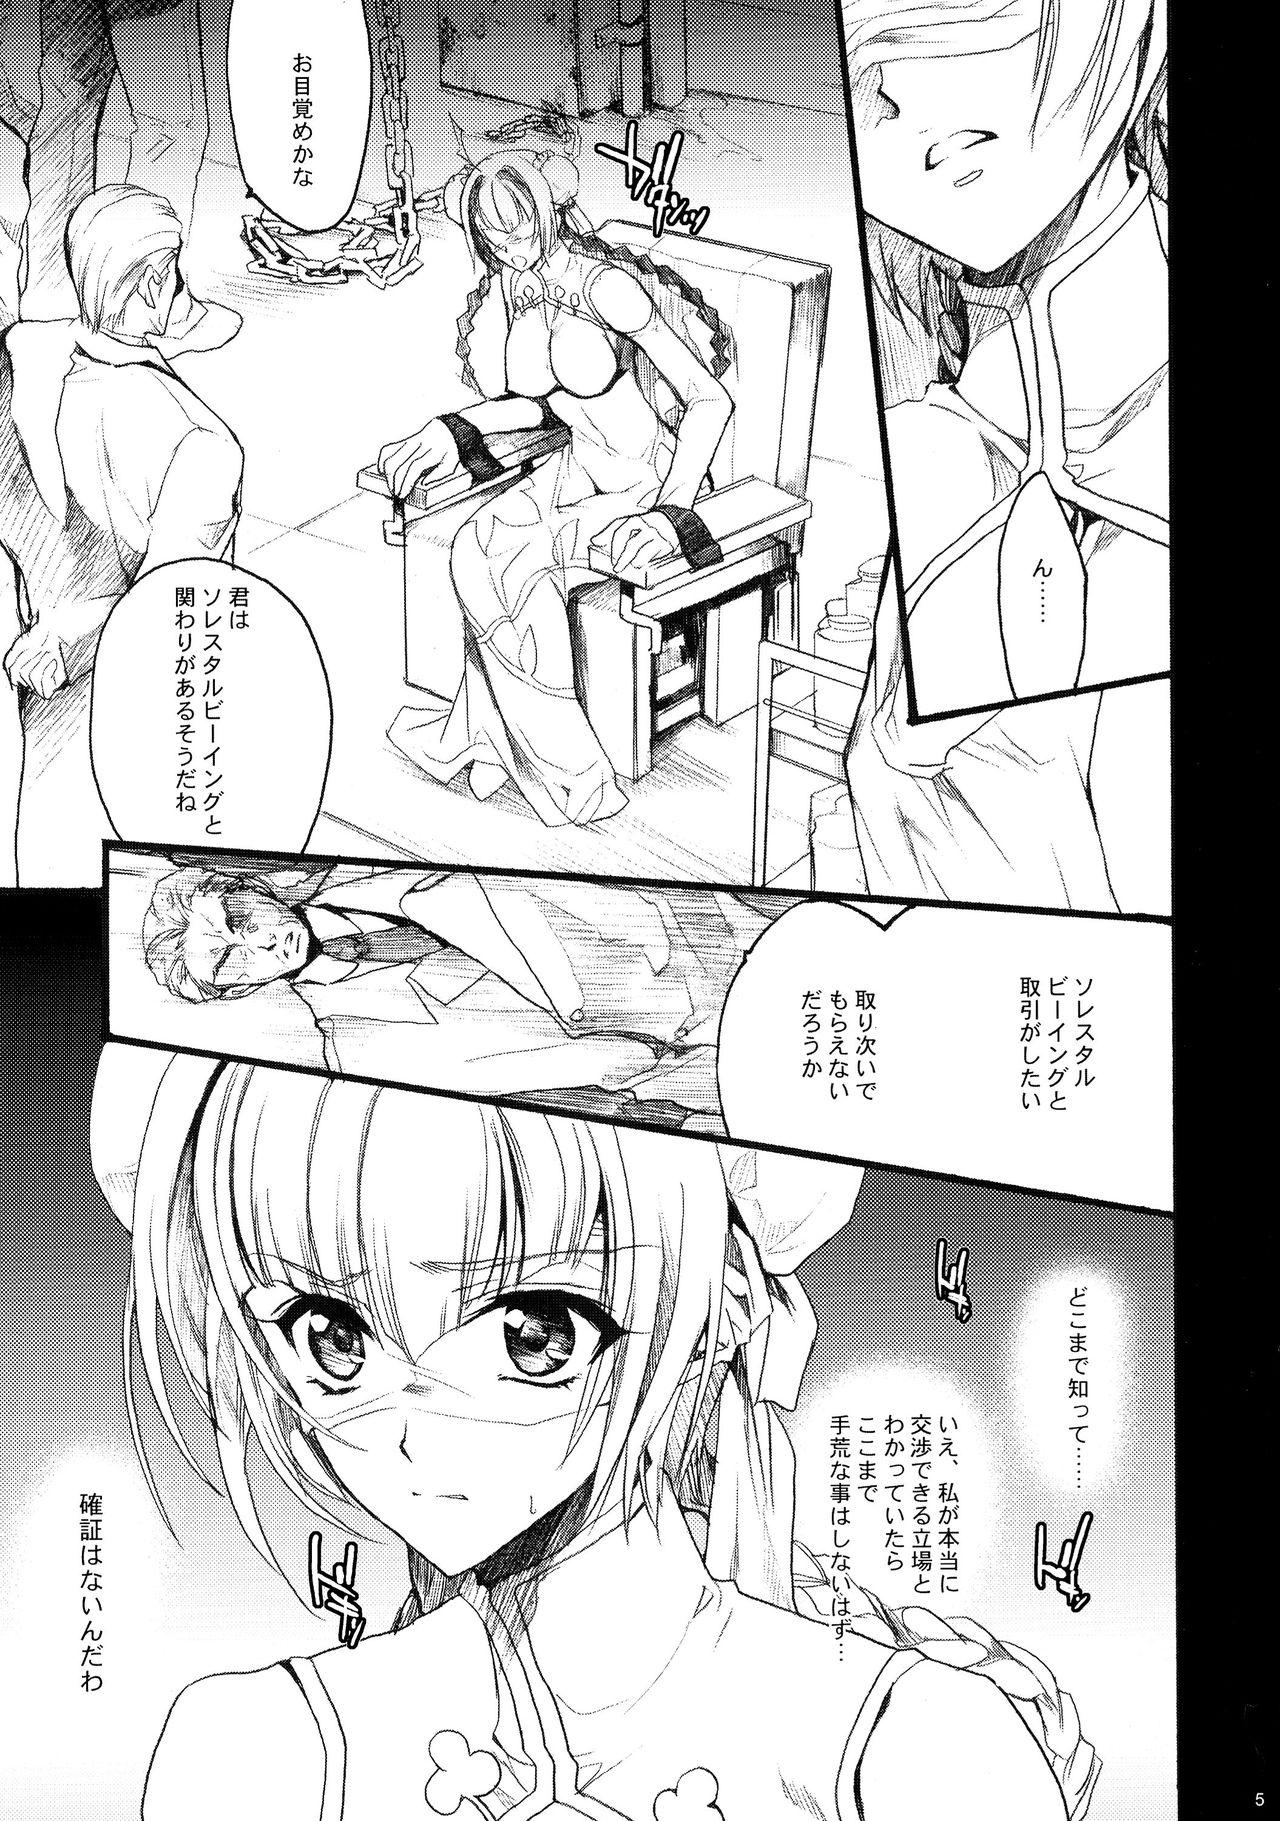 Bitch Sono Mune o Yoshi to suru!! - Gundam 00 Gordibuena - Page 5